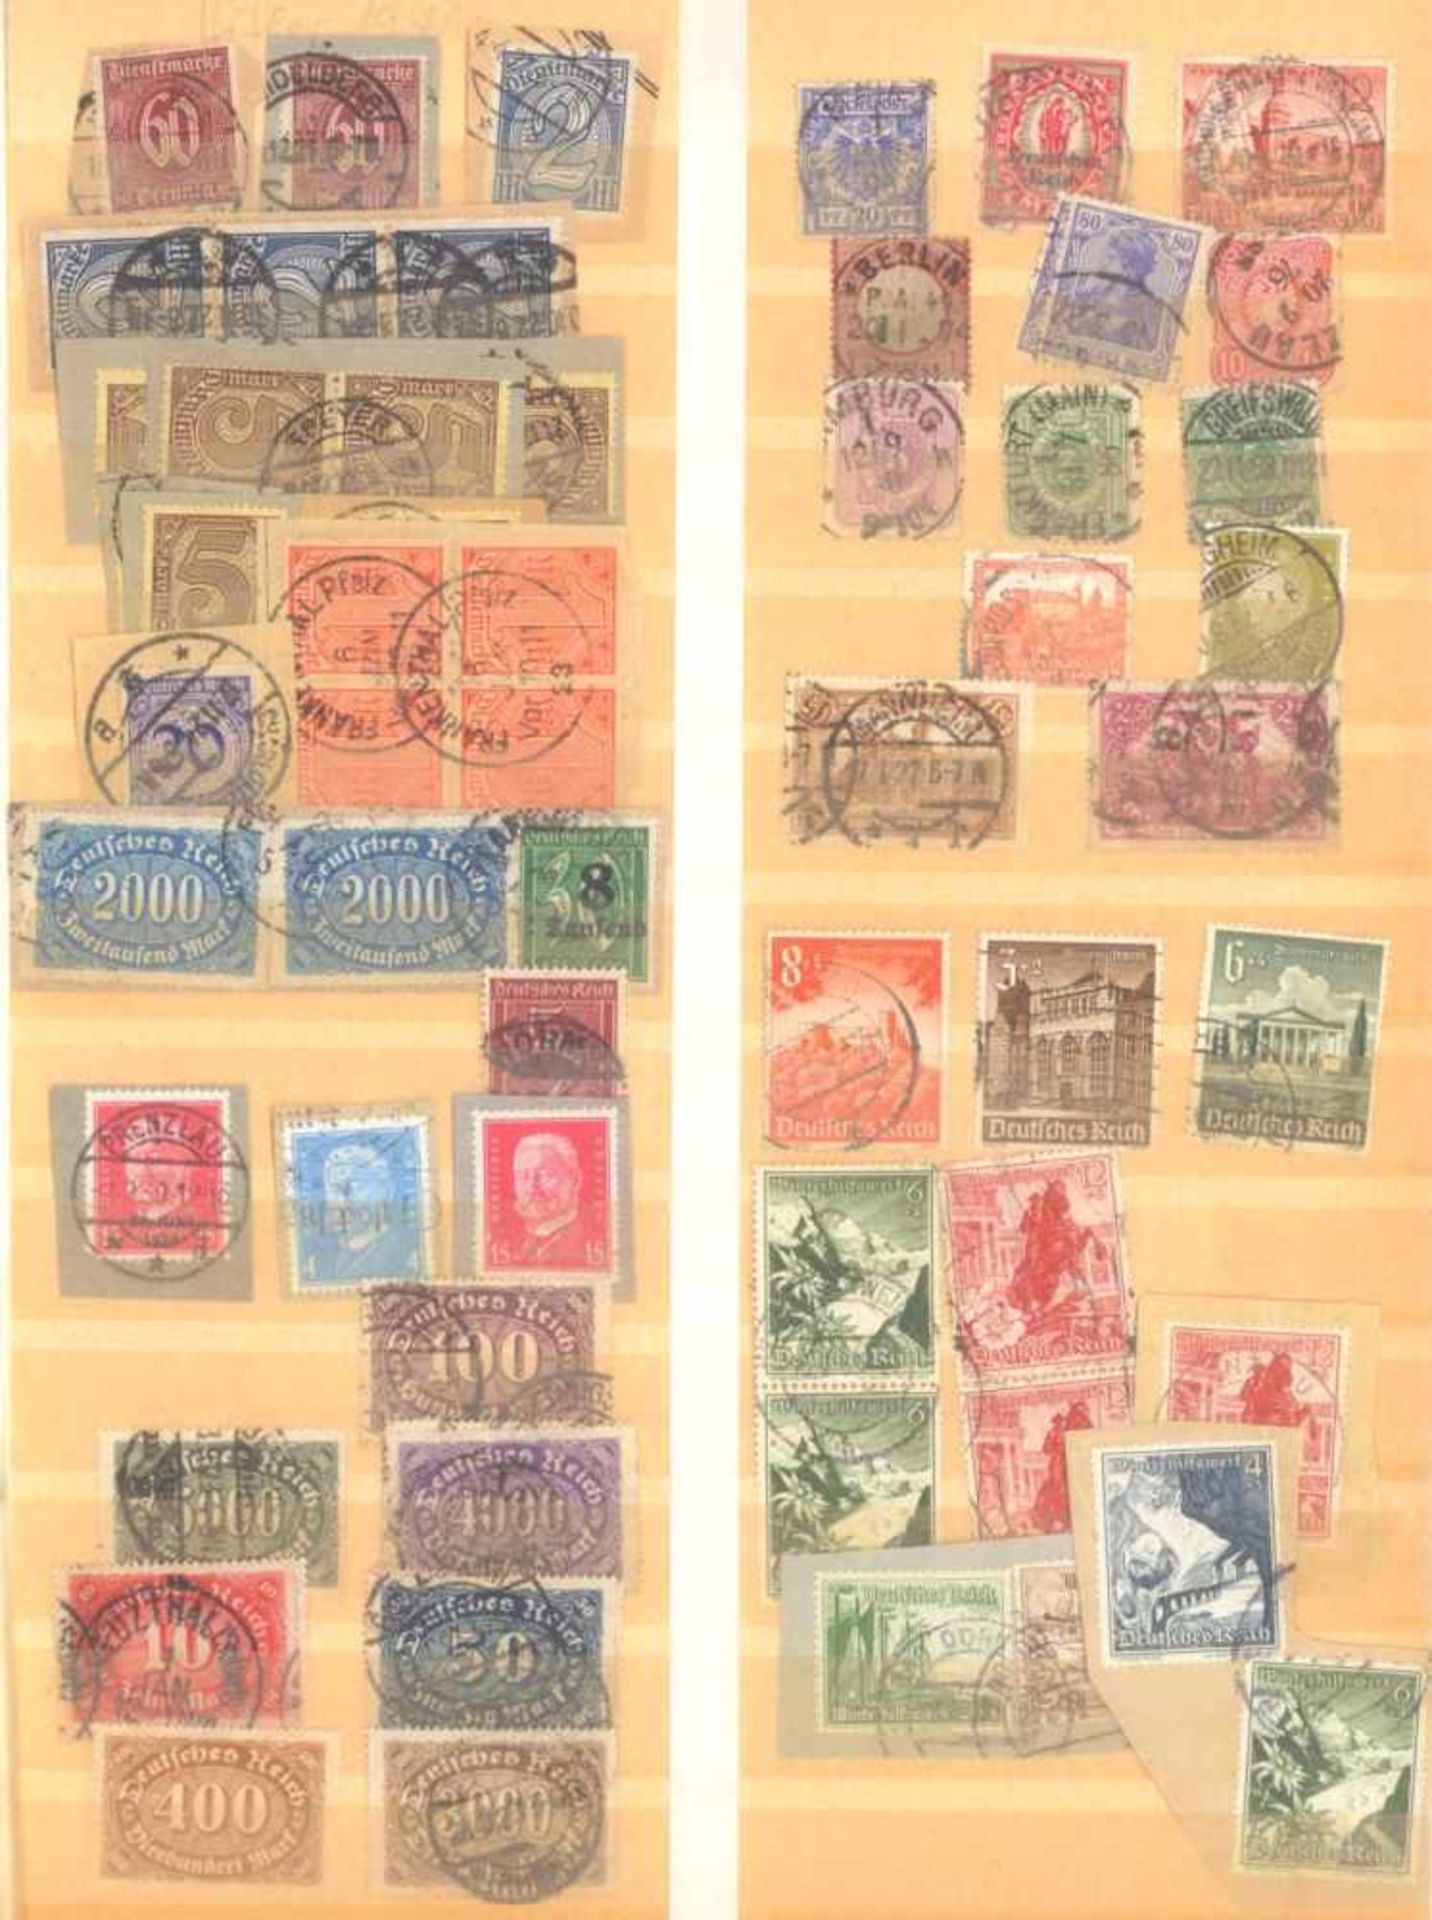 FRANKENTHALER NACHLASSuriger Nachlass mit Briefmarken und Belegen. Dabei DeutschesReich, altes - Image 13 of 46